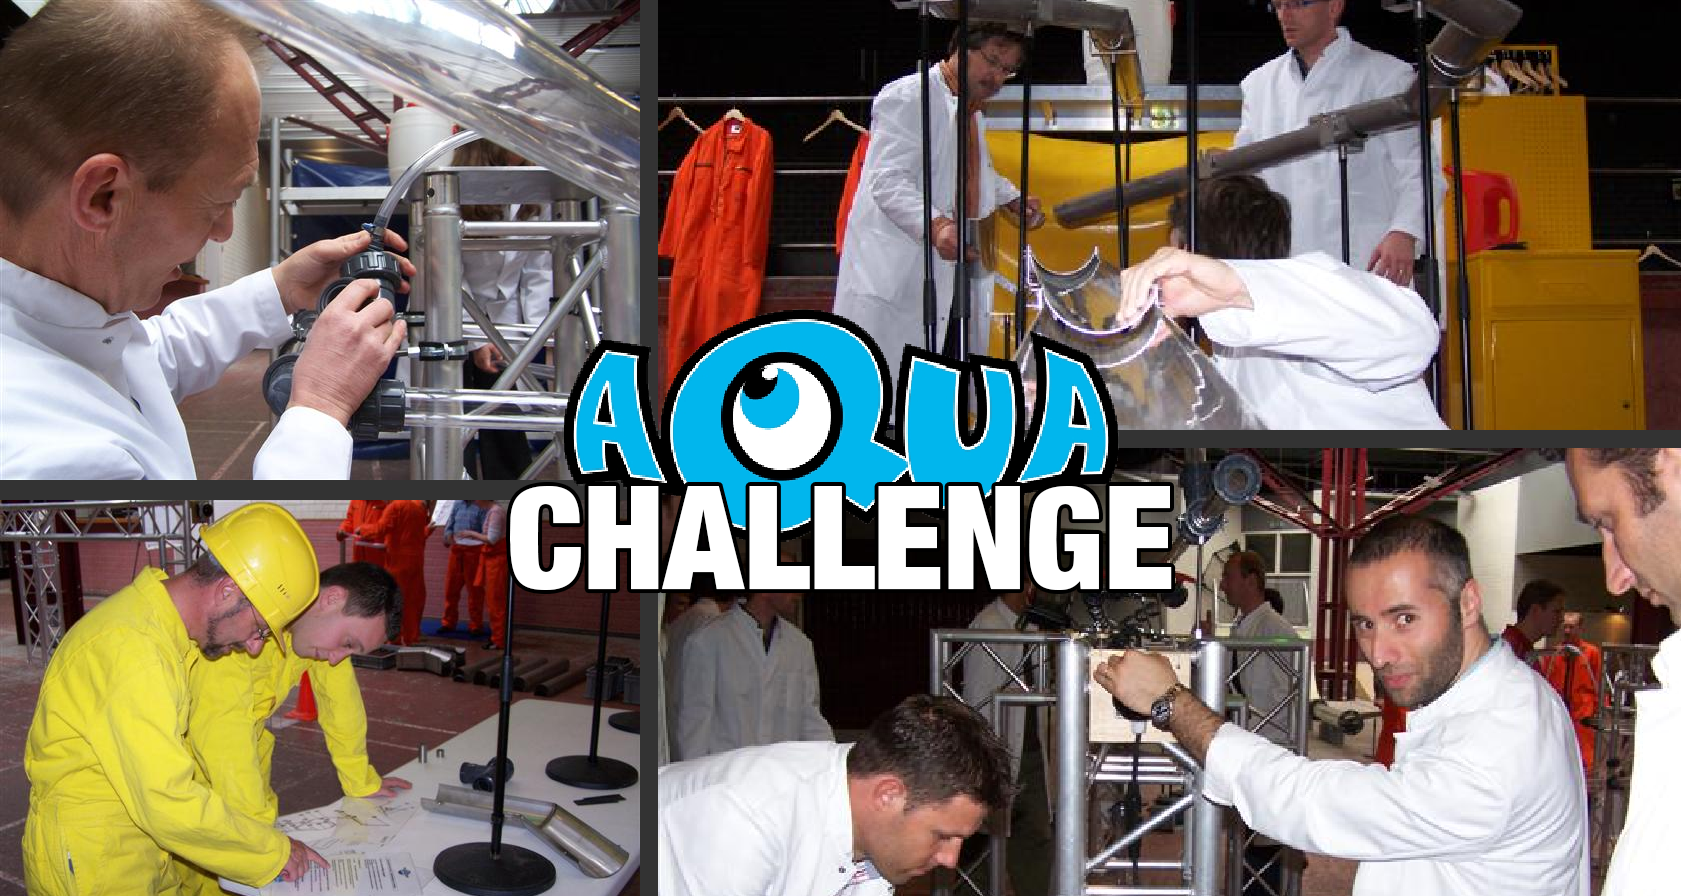 Teamuitje Maastricht: Aqua Challenge